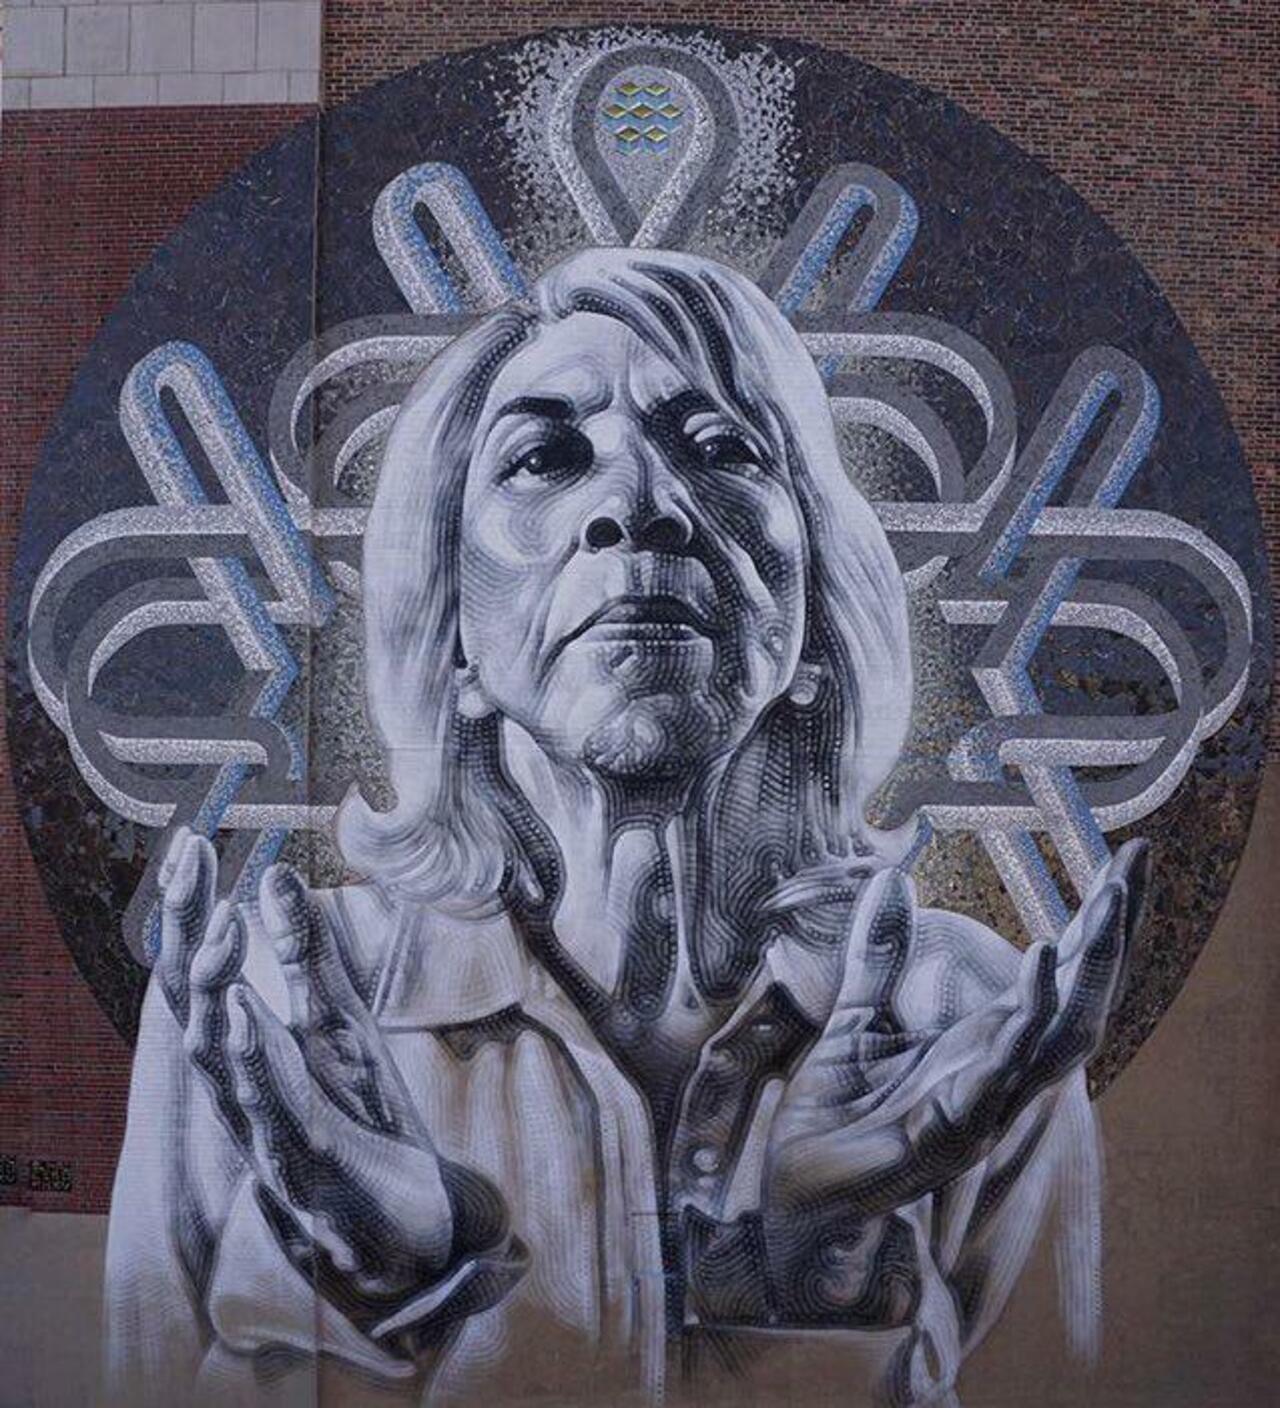 RT @artlife365: New Street Art by El Mac 

#art #graffiti #mural #streetart https://t.co/4sH68wMWcx